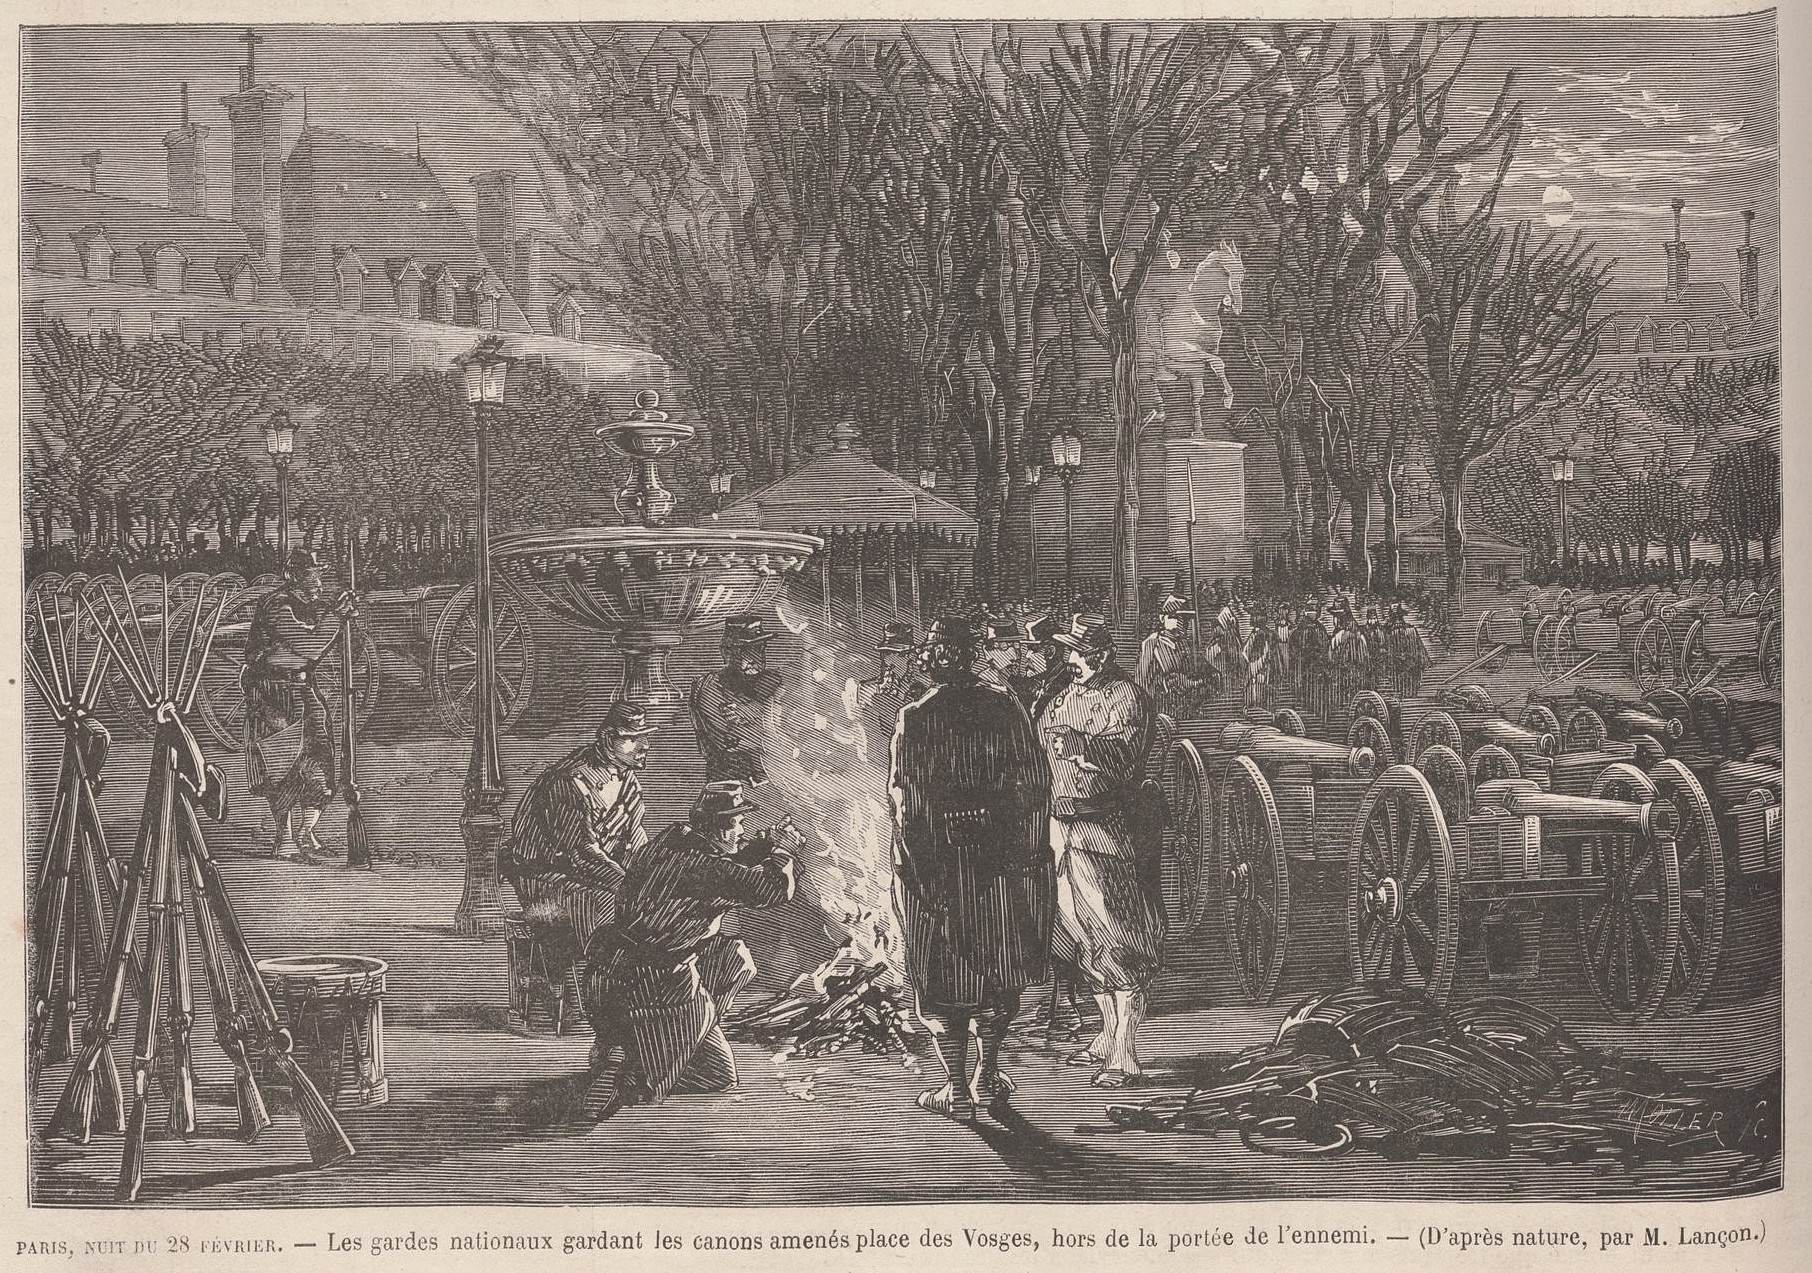 28 février 1871 - La Garde nationale garde les canons des Parisiens place des Vosges (source : Le Monde Illustré du 11 mars 1871)